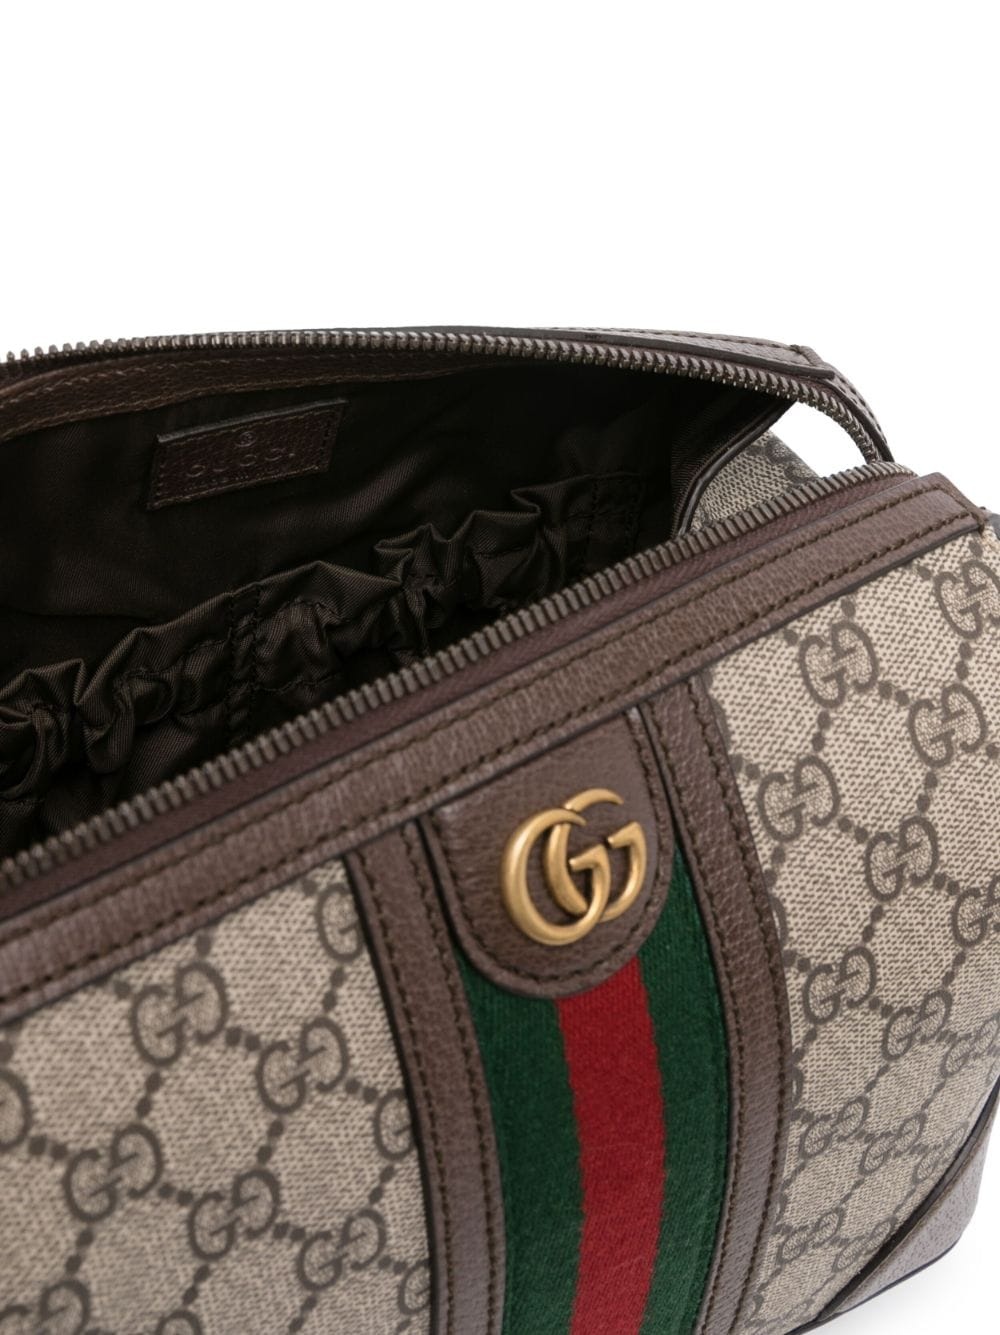 GG Supreme leather wash bag - 4